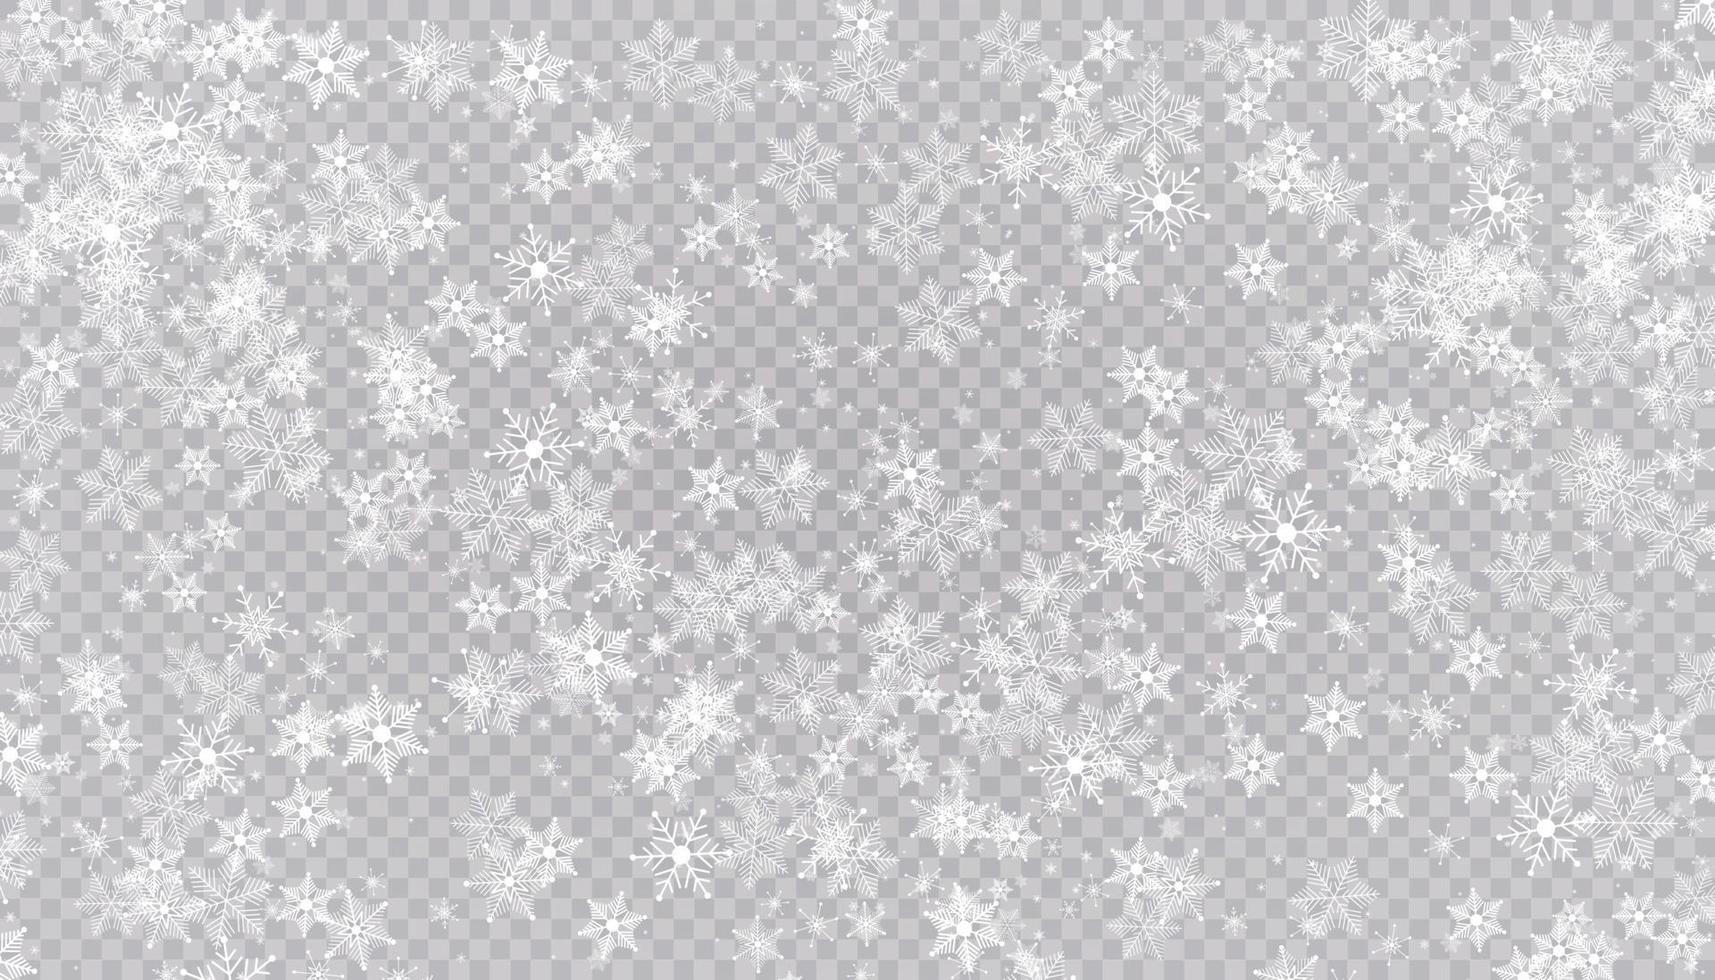 weißer Schnee fliegt. Weihnachtsschneeflocken. Winter Schneesturm Hintergrund Illustration. vektor